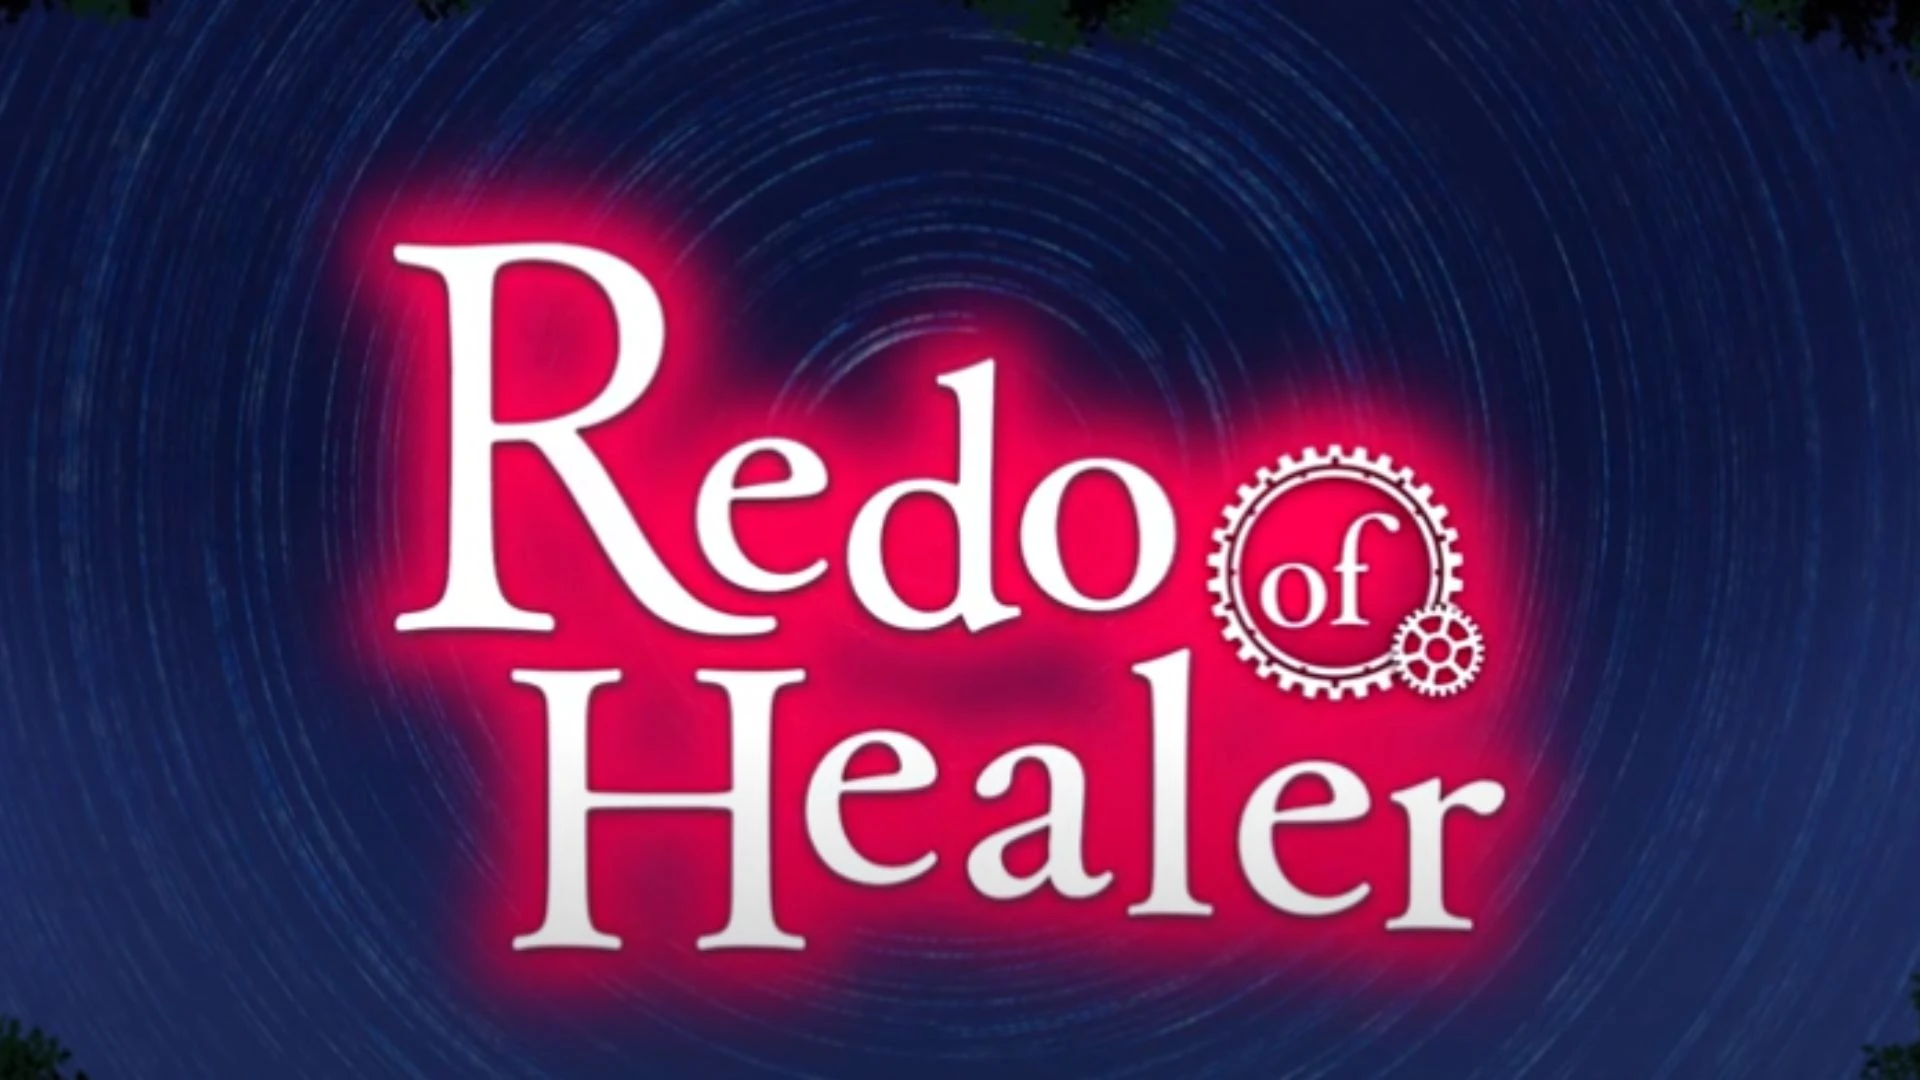 Redo of Healer (TV Series 2021) - IMDb